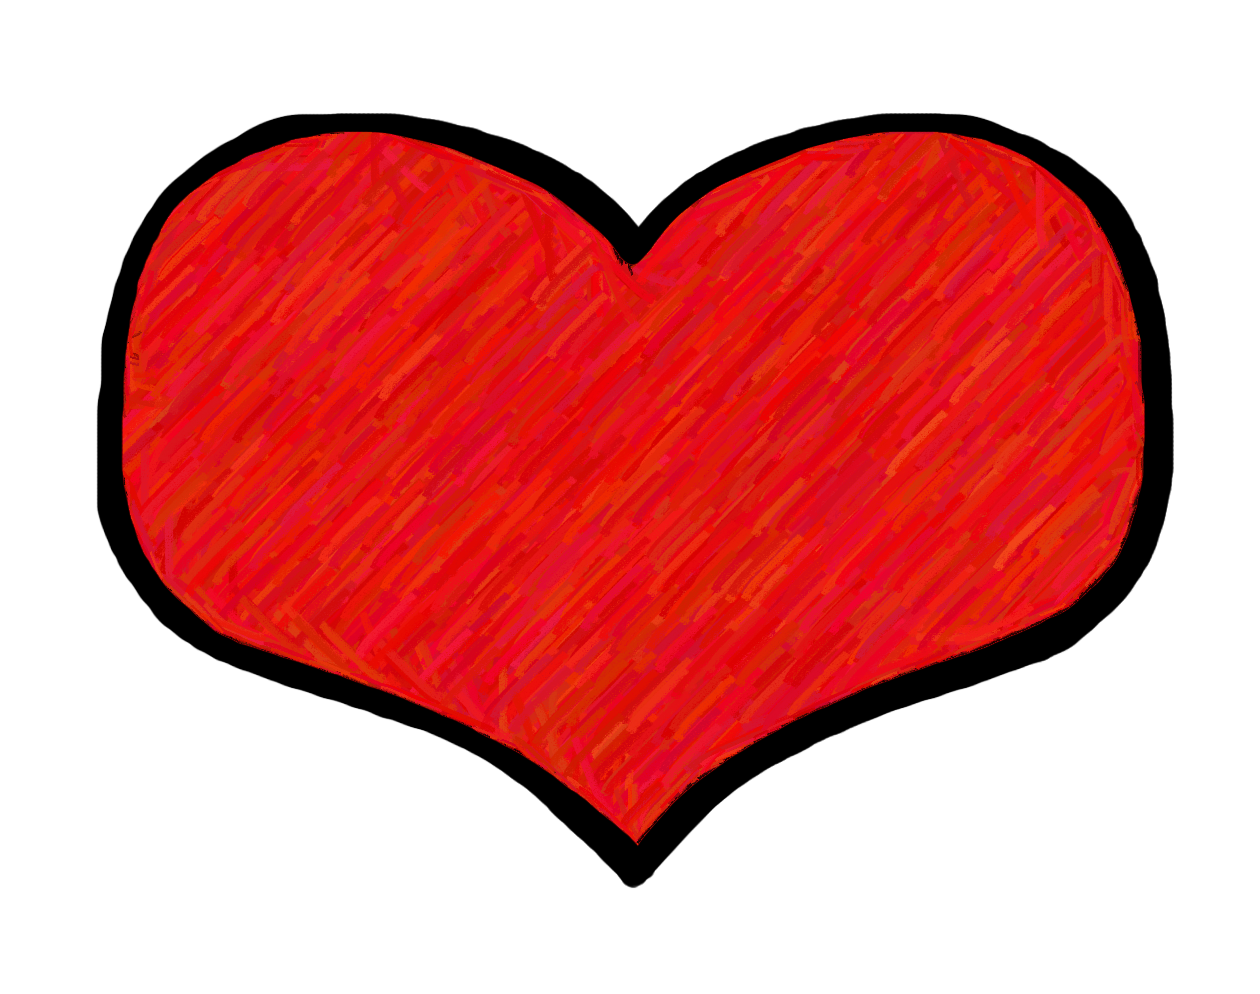 Hearts clip art images image 2 - Vergilis Clipart